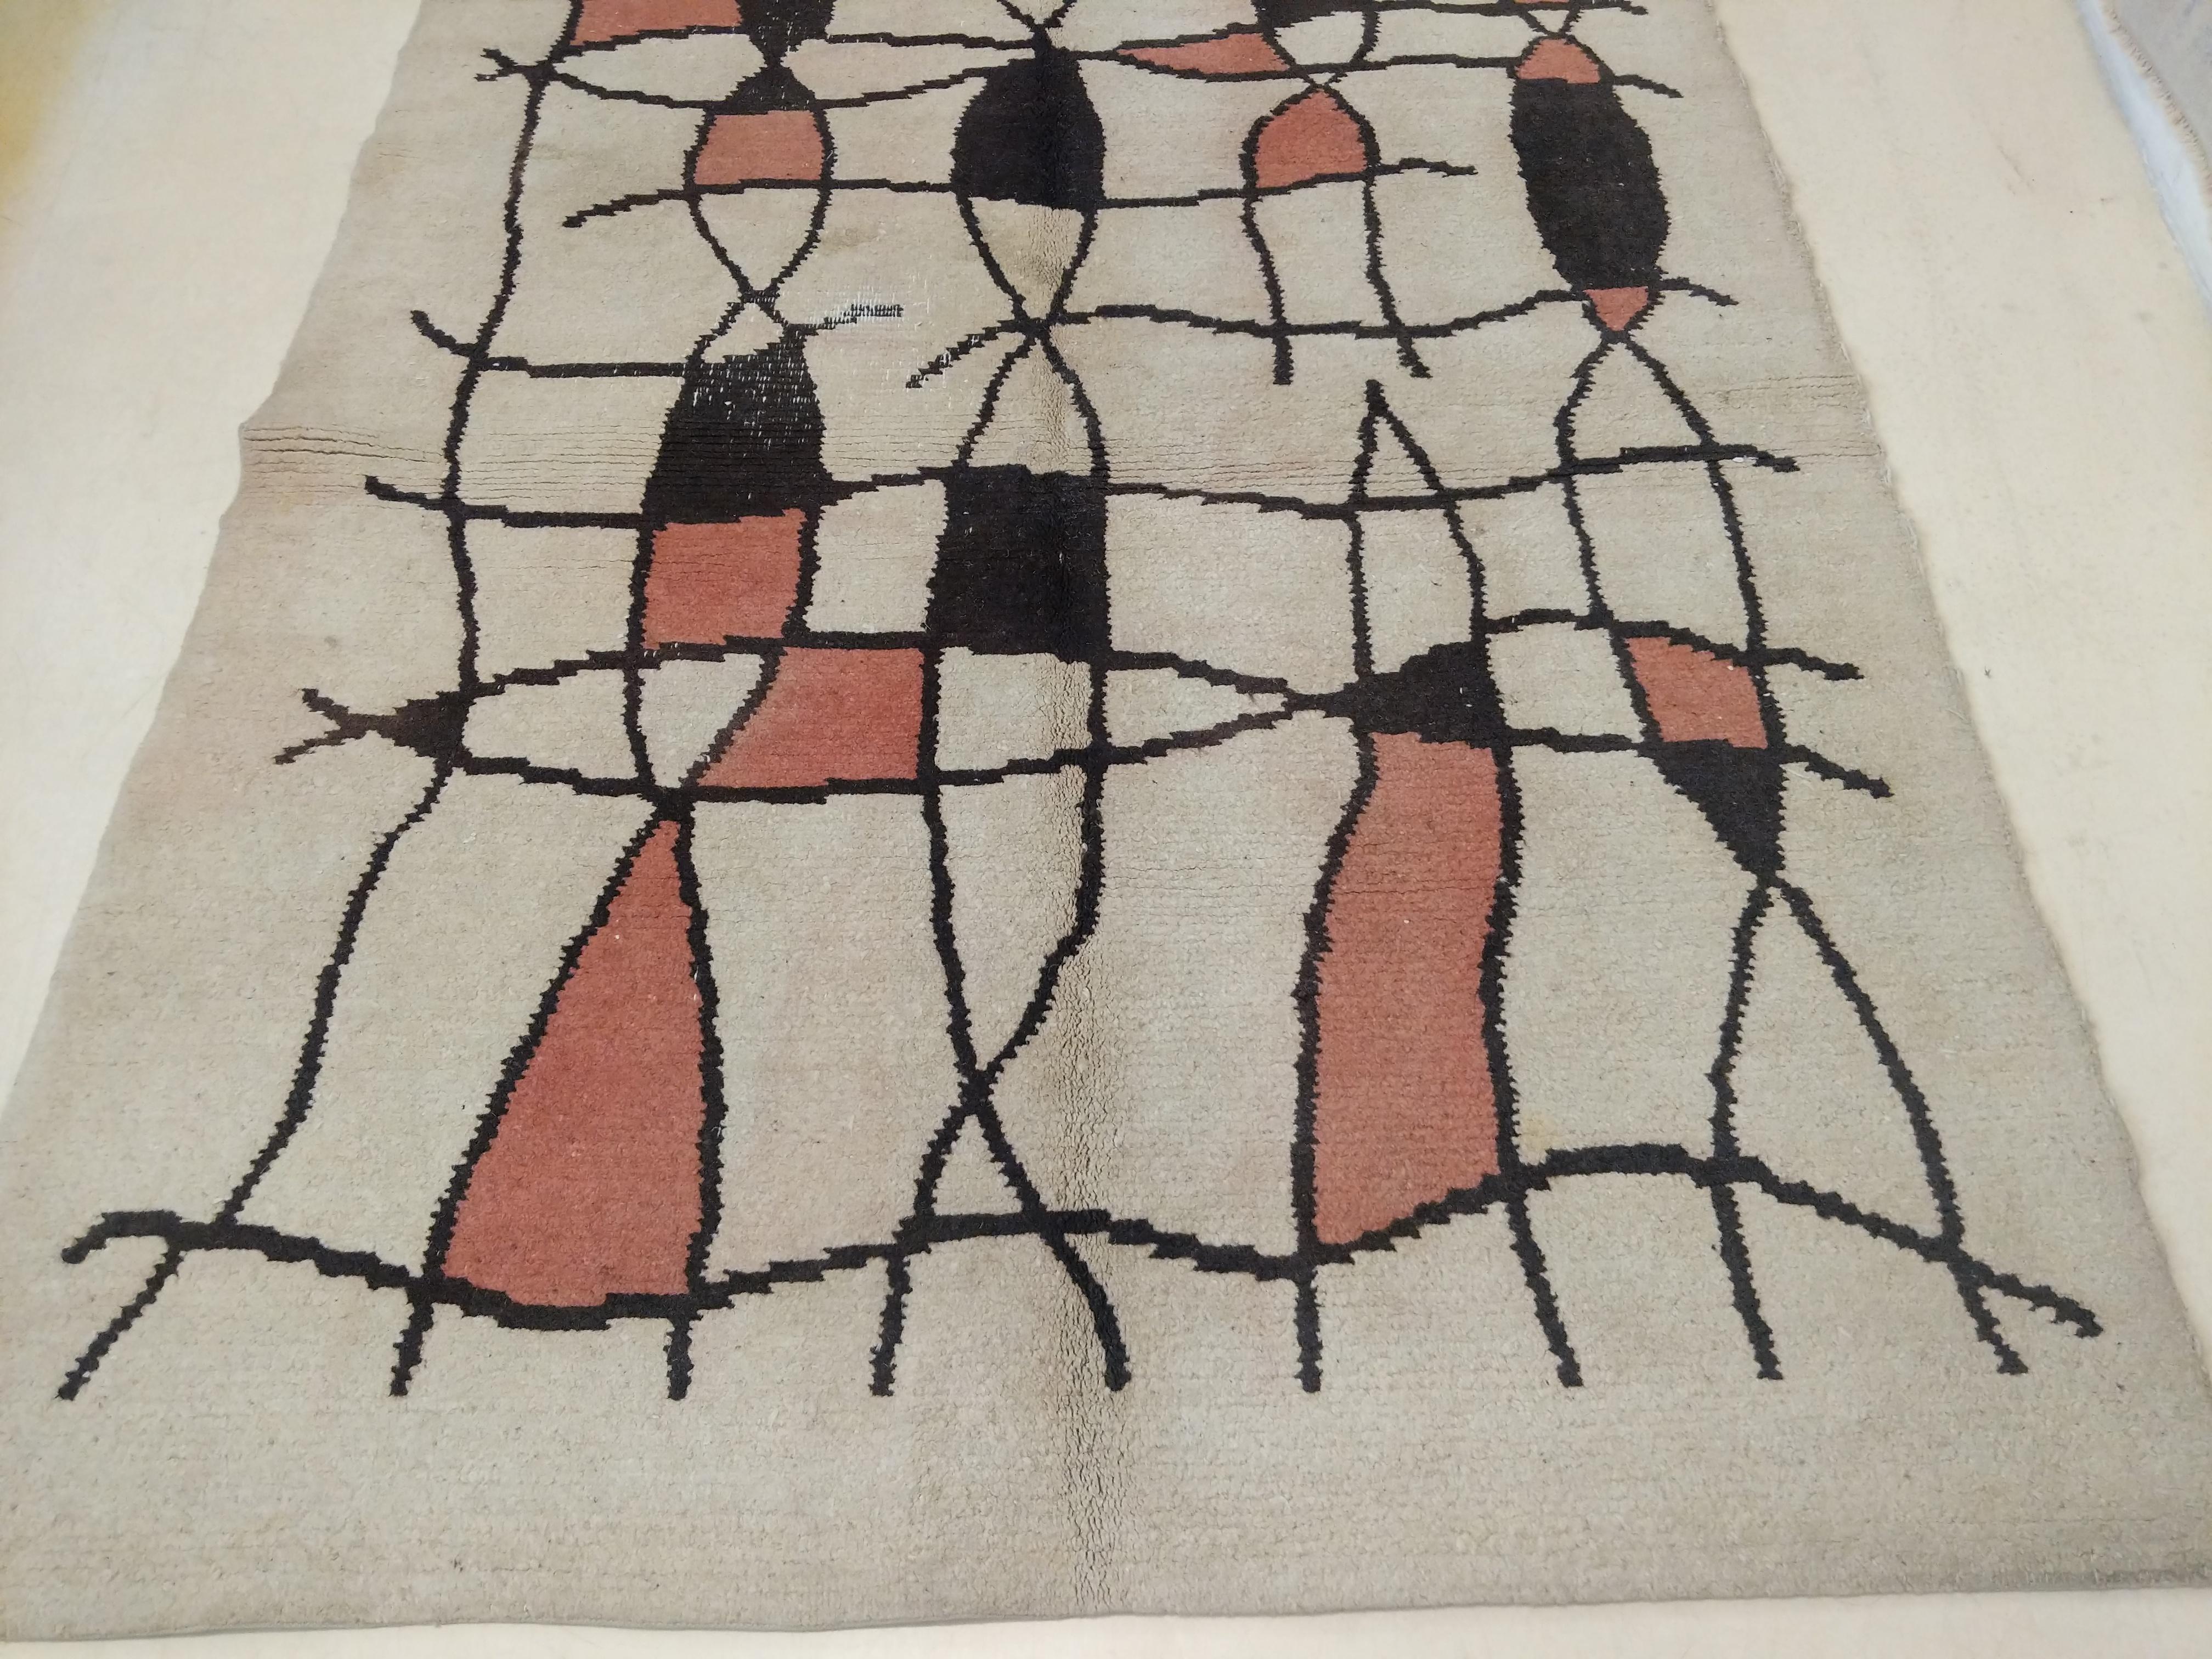 Ein seltener und ungewöhnlicher französischer Art-Déco-Teppich, der sich durch ein abstraktes Gittermuster auf elfenbeinfarbenem Hintergrund auszeichnet. Die Teppiche dieser Zeit waren stark von den künstlerischen Avantgarde-Bewegungen in Paris